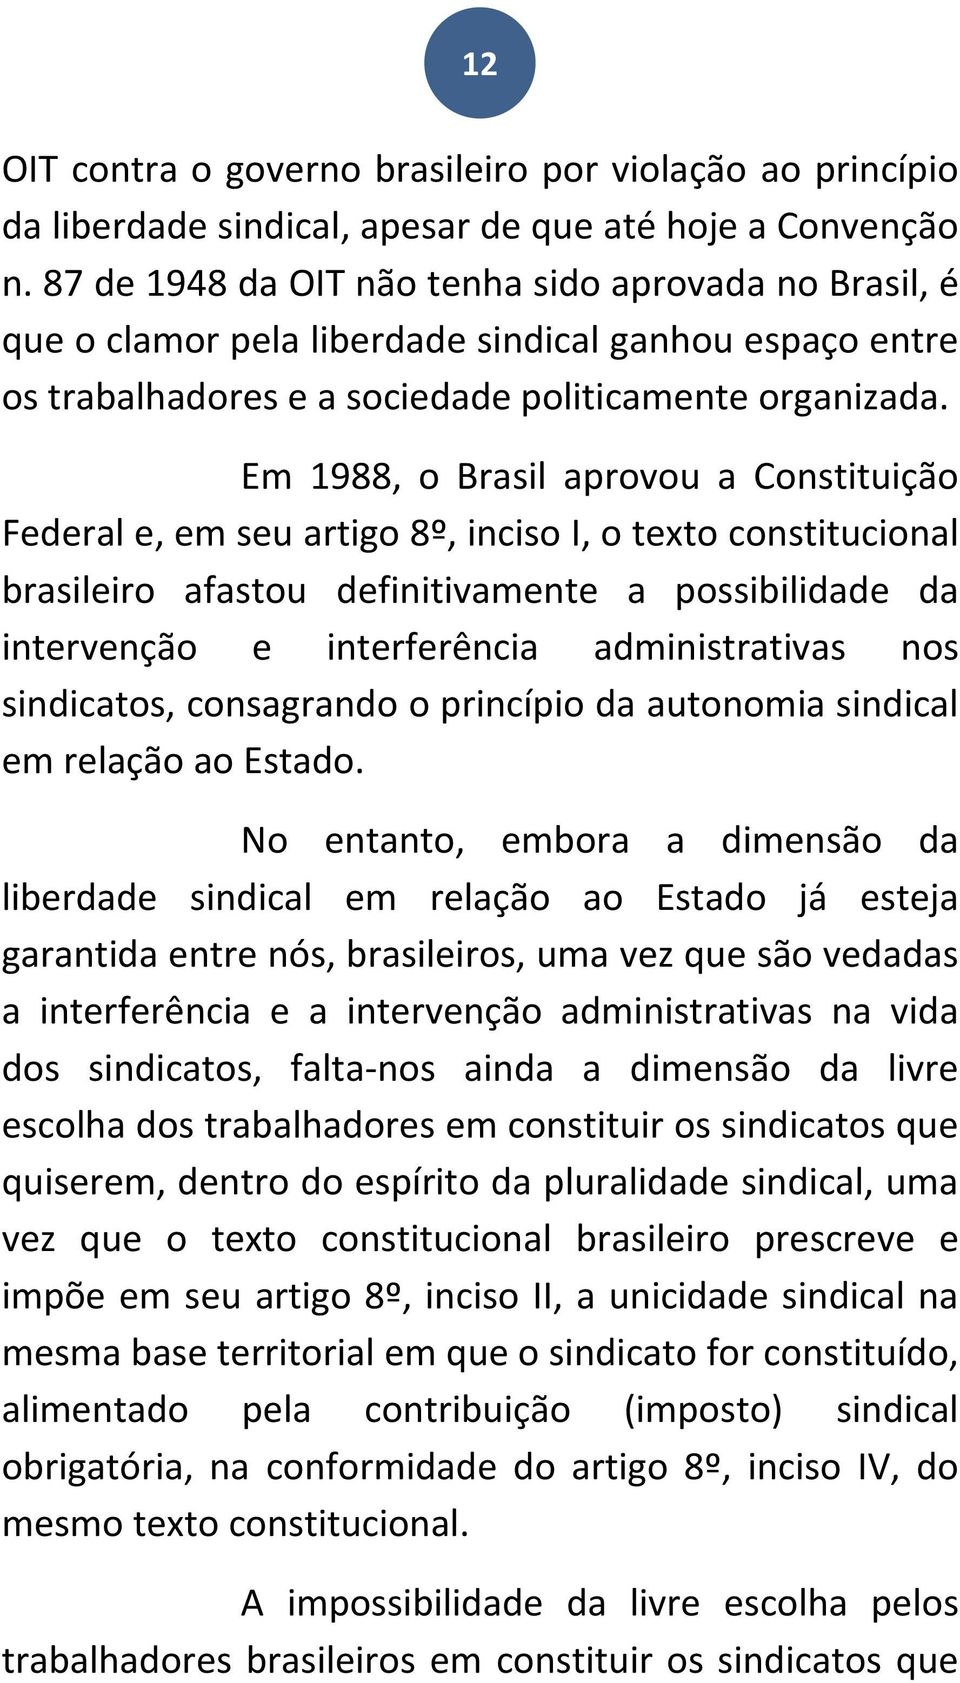 Em 1988, o Brasil aprovou a Constituição Federal e, em seu artigo 8º, inciso I, o texto constitucional brasileiro afastou definitivamente a possibilidade da intervenção e interferência